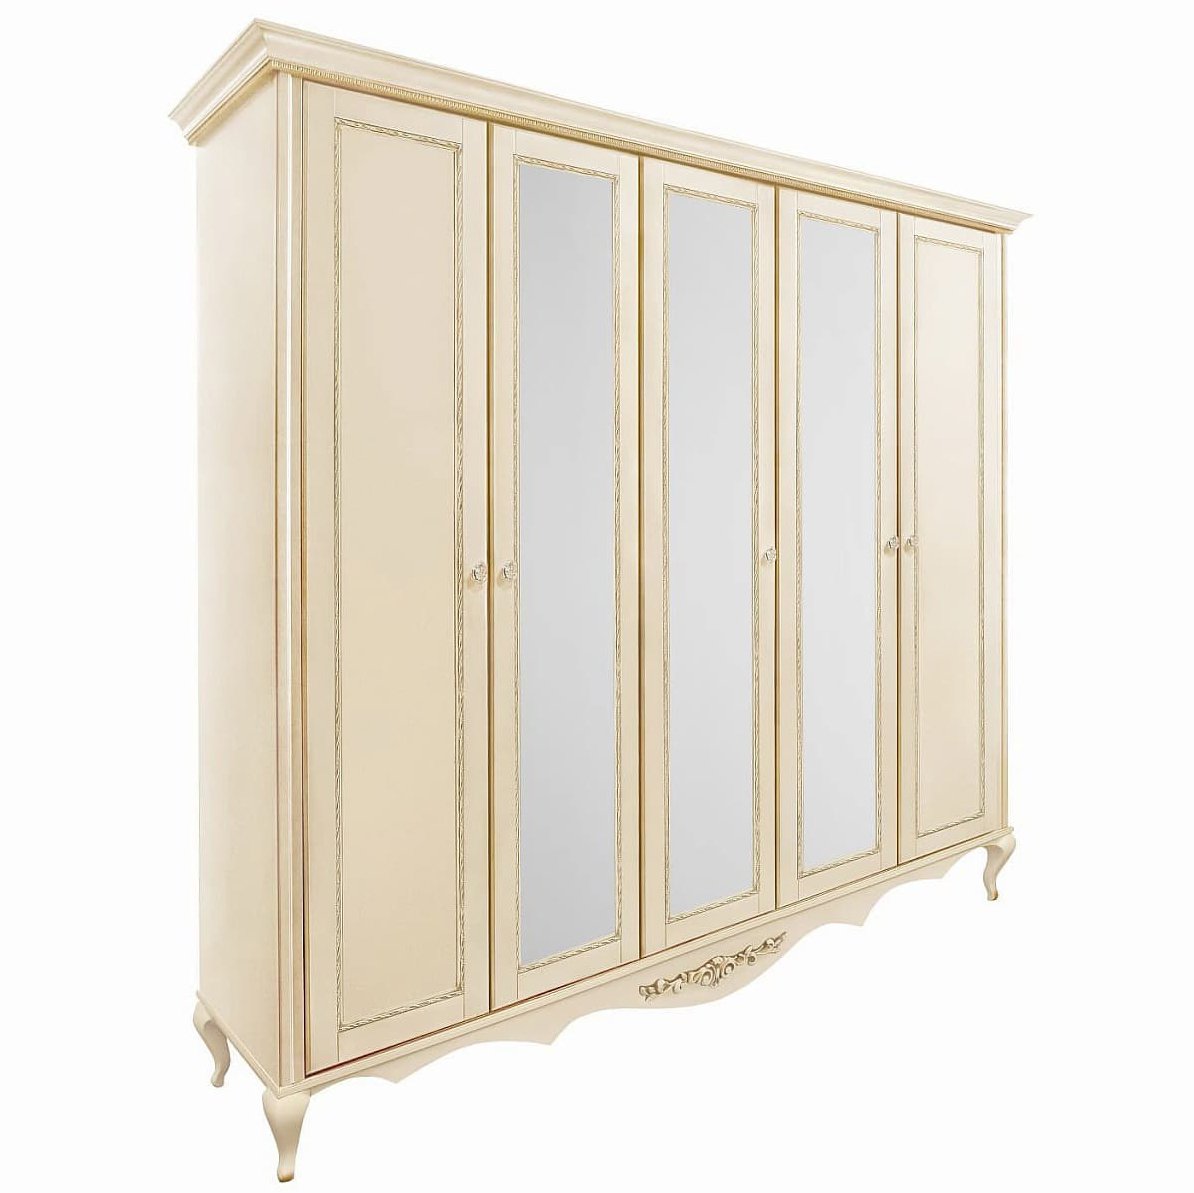 Шкаф платяной Timber Неаполь, 5-ти дверный с зеркалами 249x65x227 см цвет: ваниль с золотом (T-525)T-525